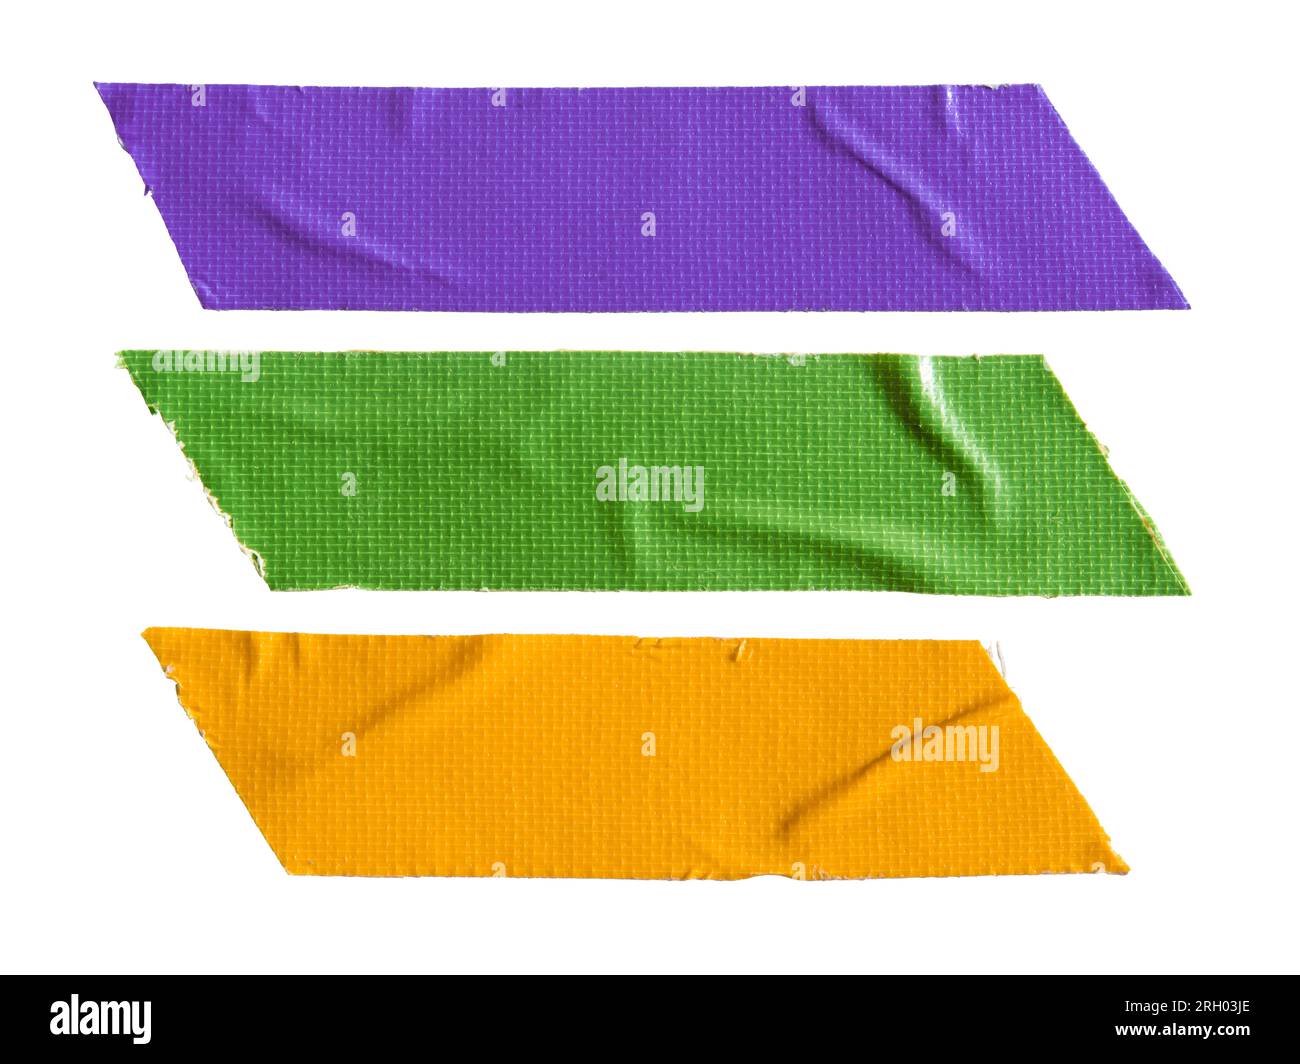 Ruban de tissu violet, vert et jaune sur fond blanc avec chemin de détourage Banque D'Images